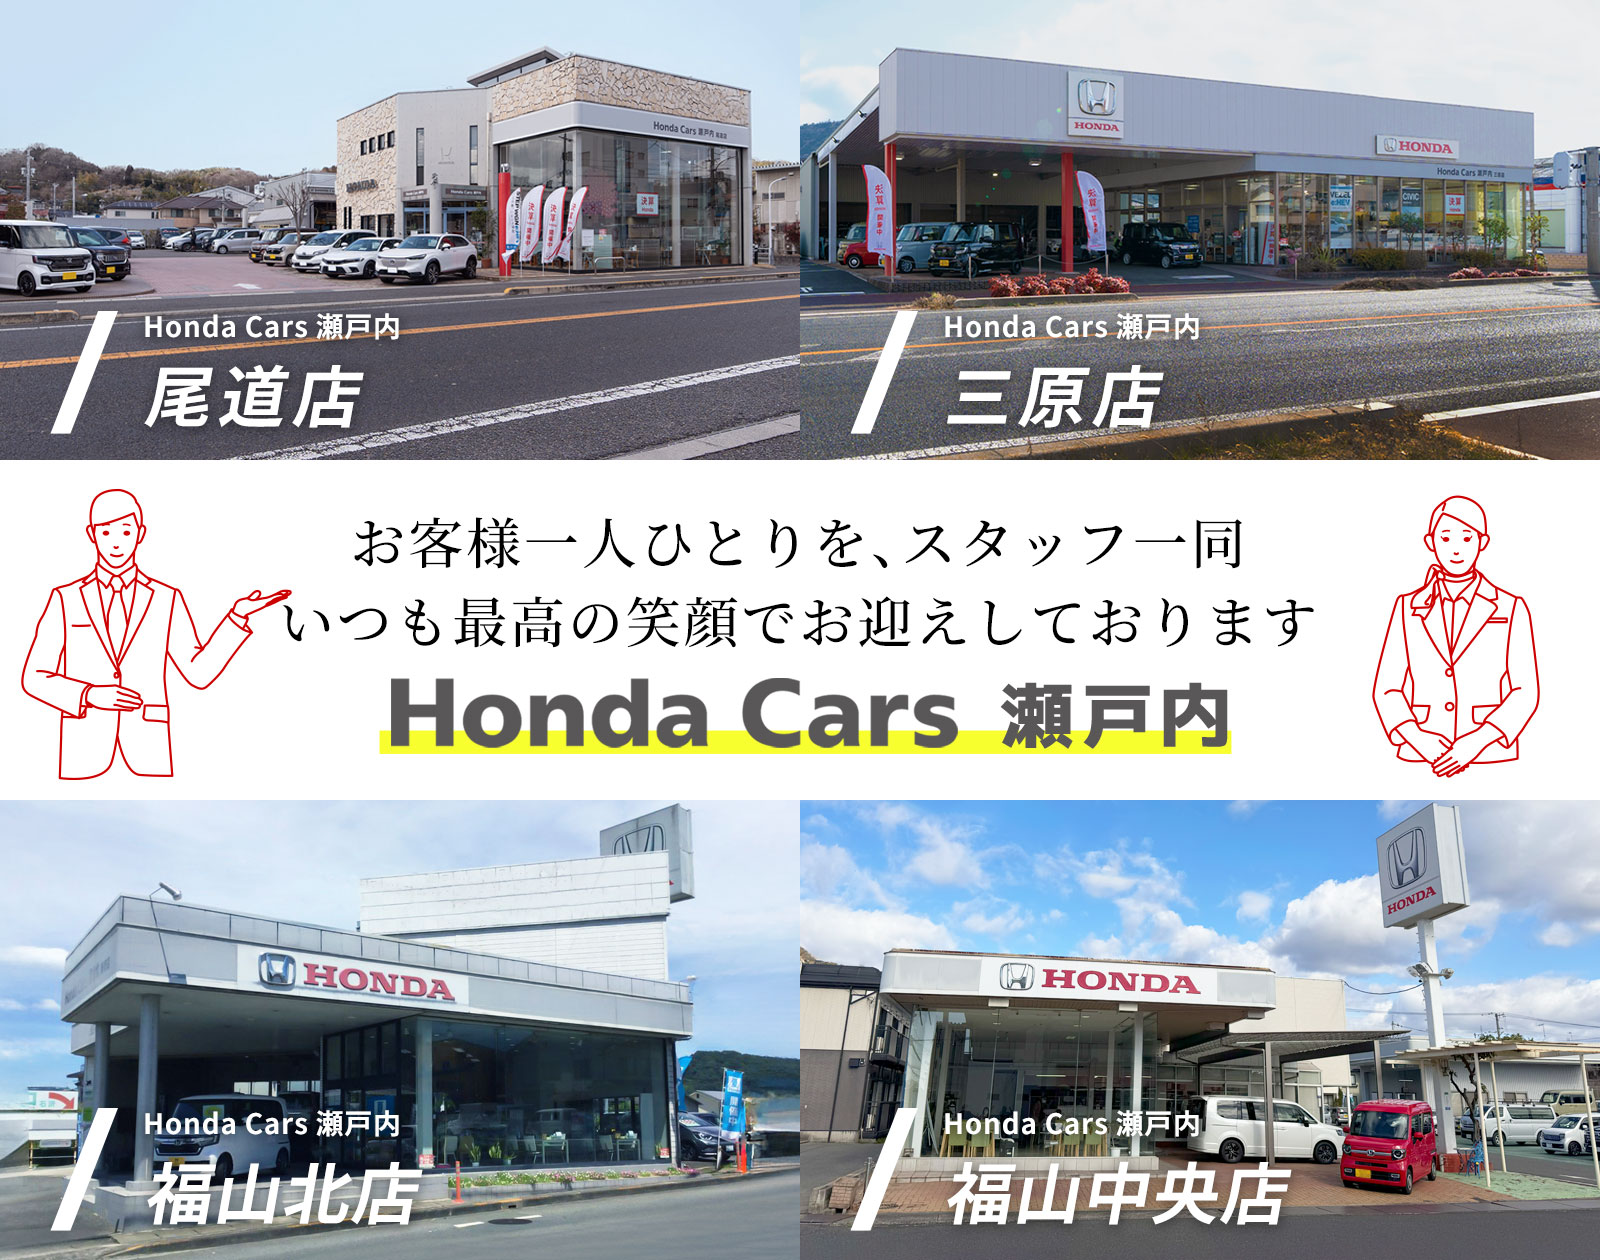 お客様一人ひとりを、スタッフ一同いつも最高の笑顔でお迎えしております「Honda Cars 瀬戸内」